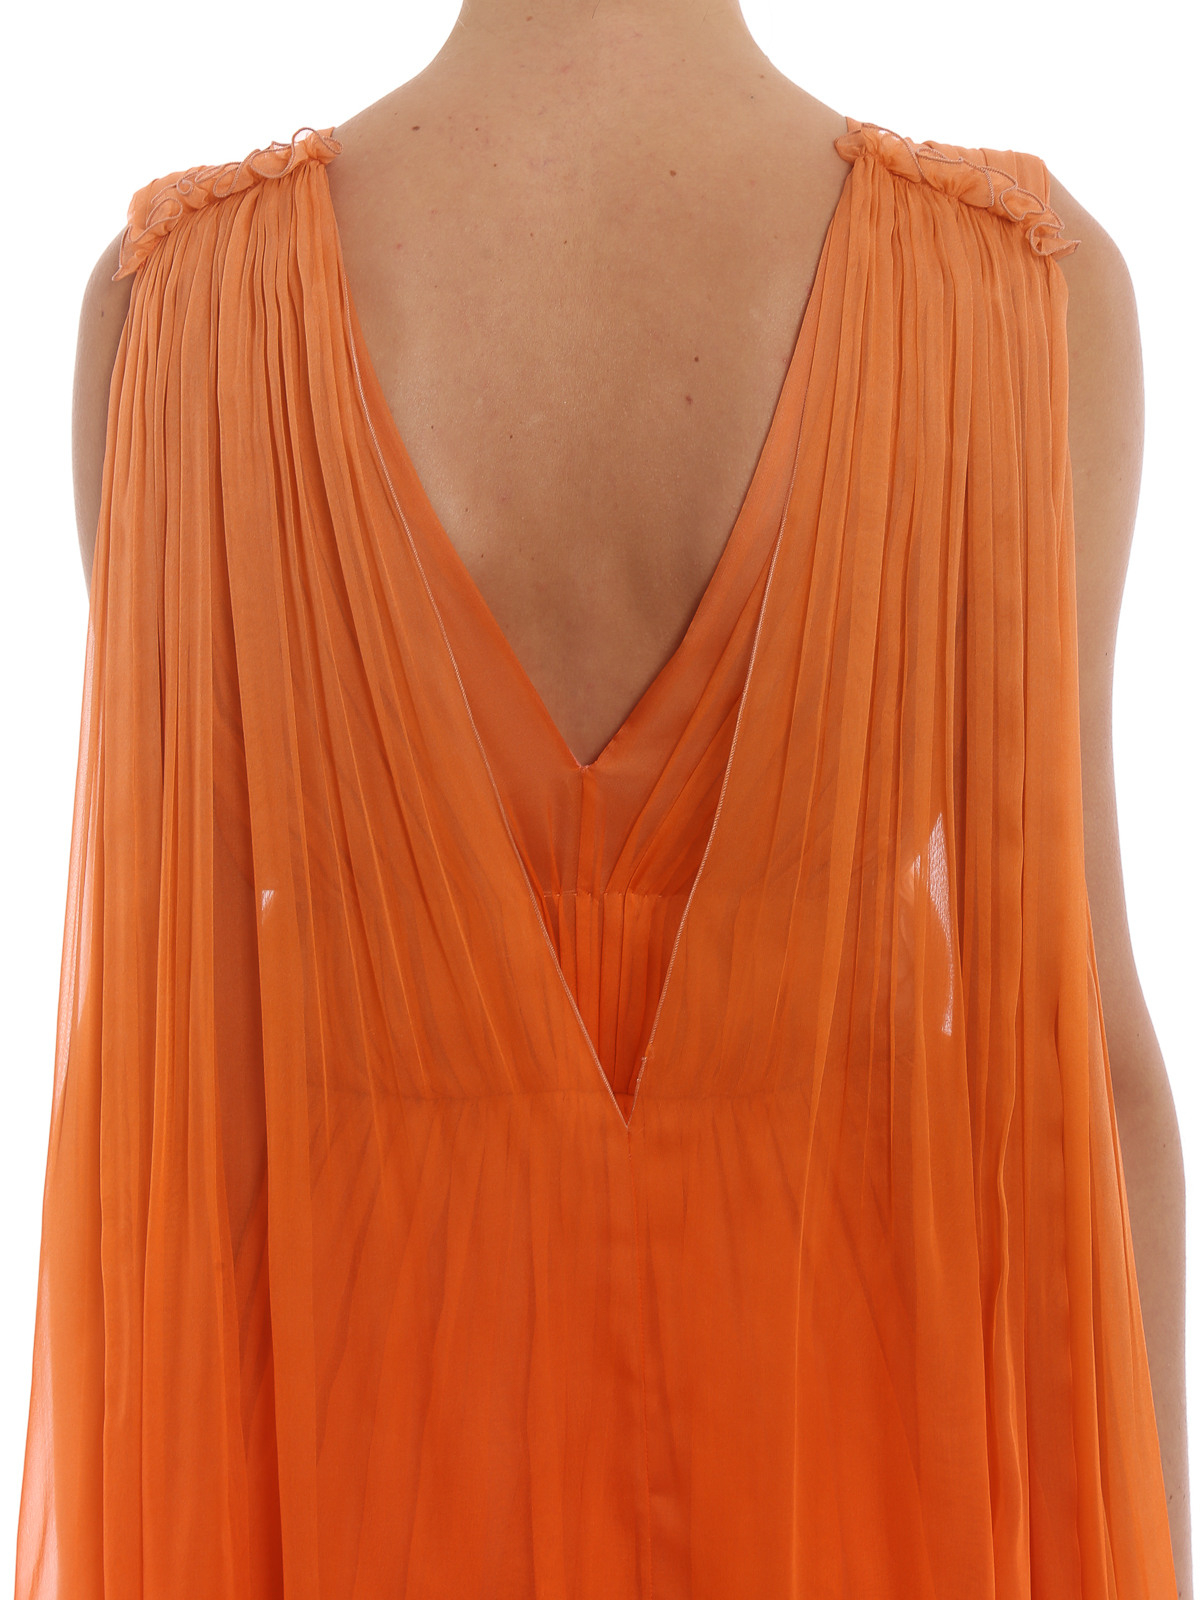 15 Top Abendkleid Orange Boutique10 Erstaunlich Abendkleid Orange Spezialgebiet